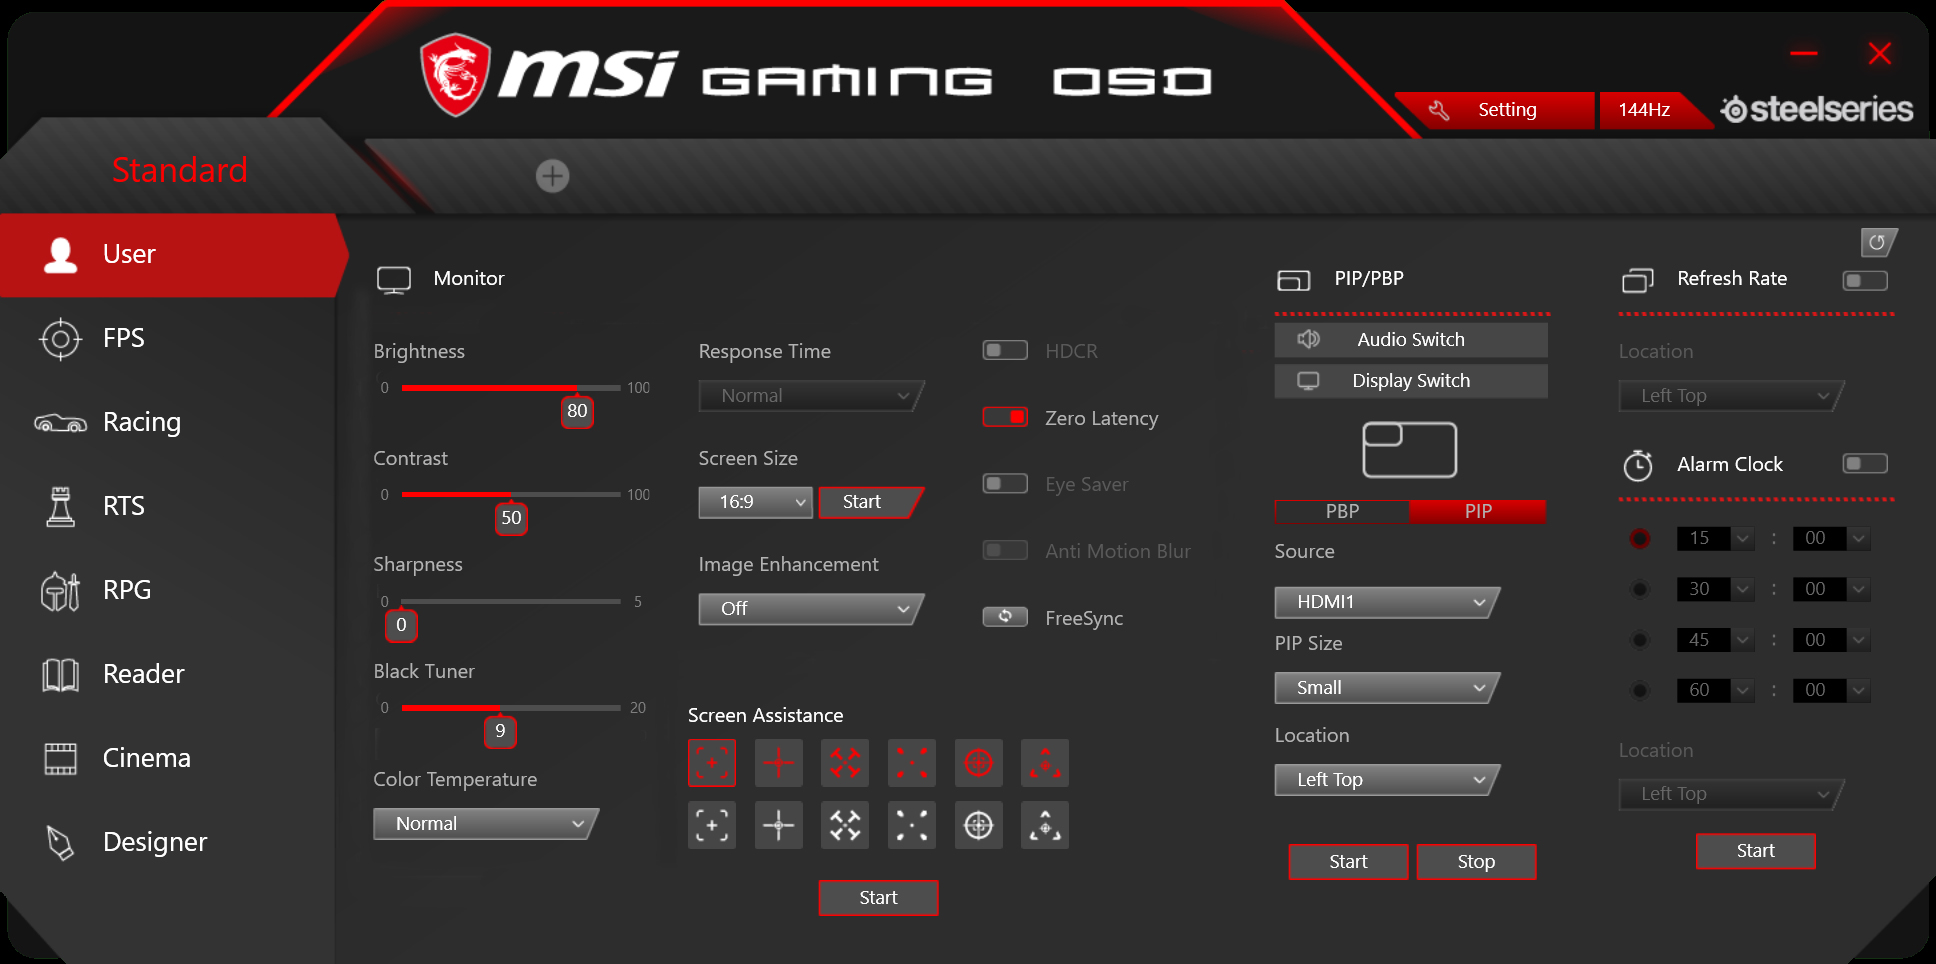 MSI Gaming OSD